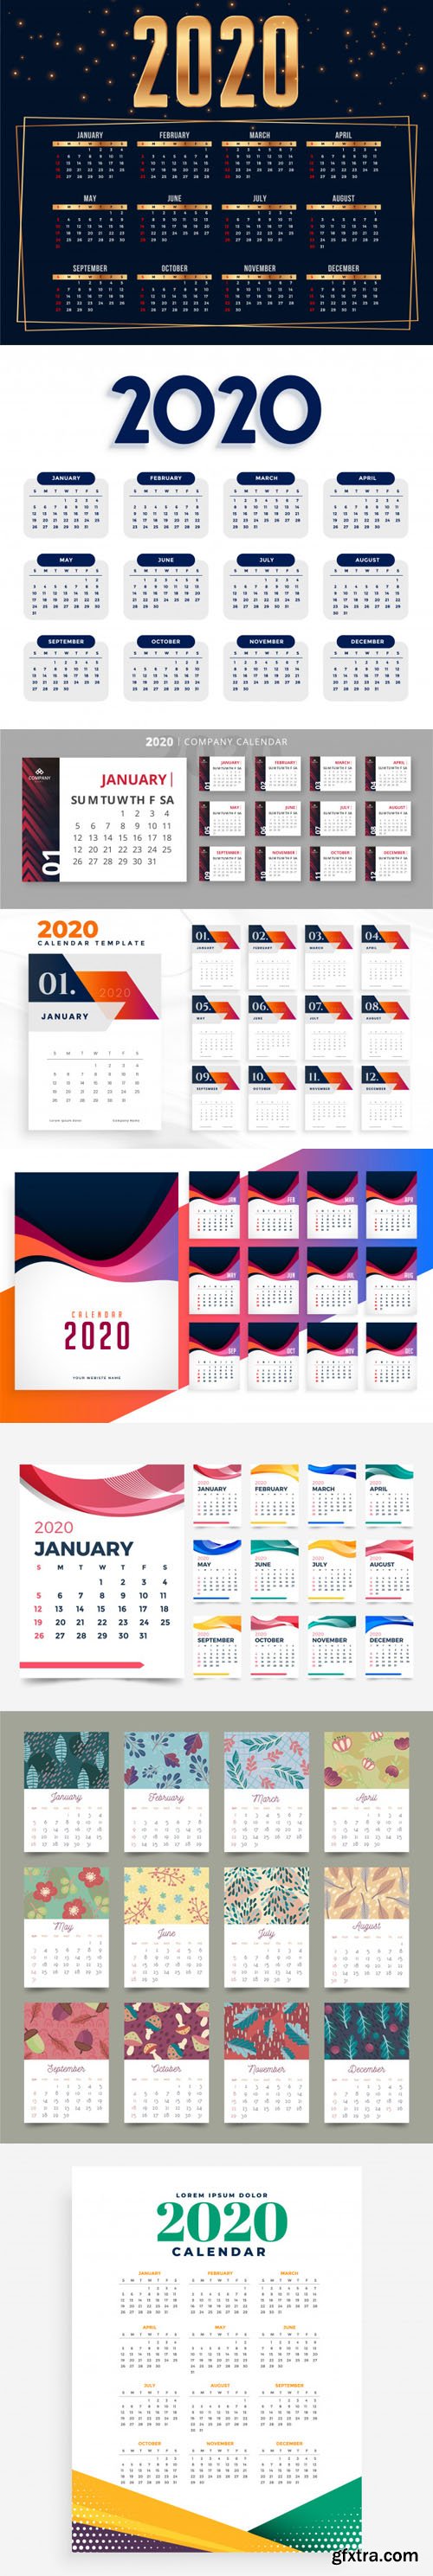 2020 Calendars Vector Collection 4